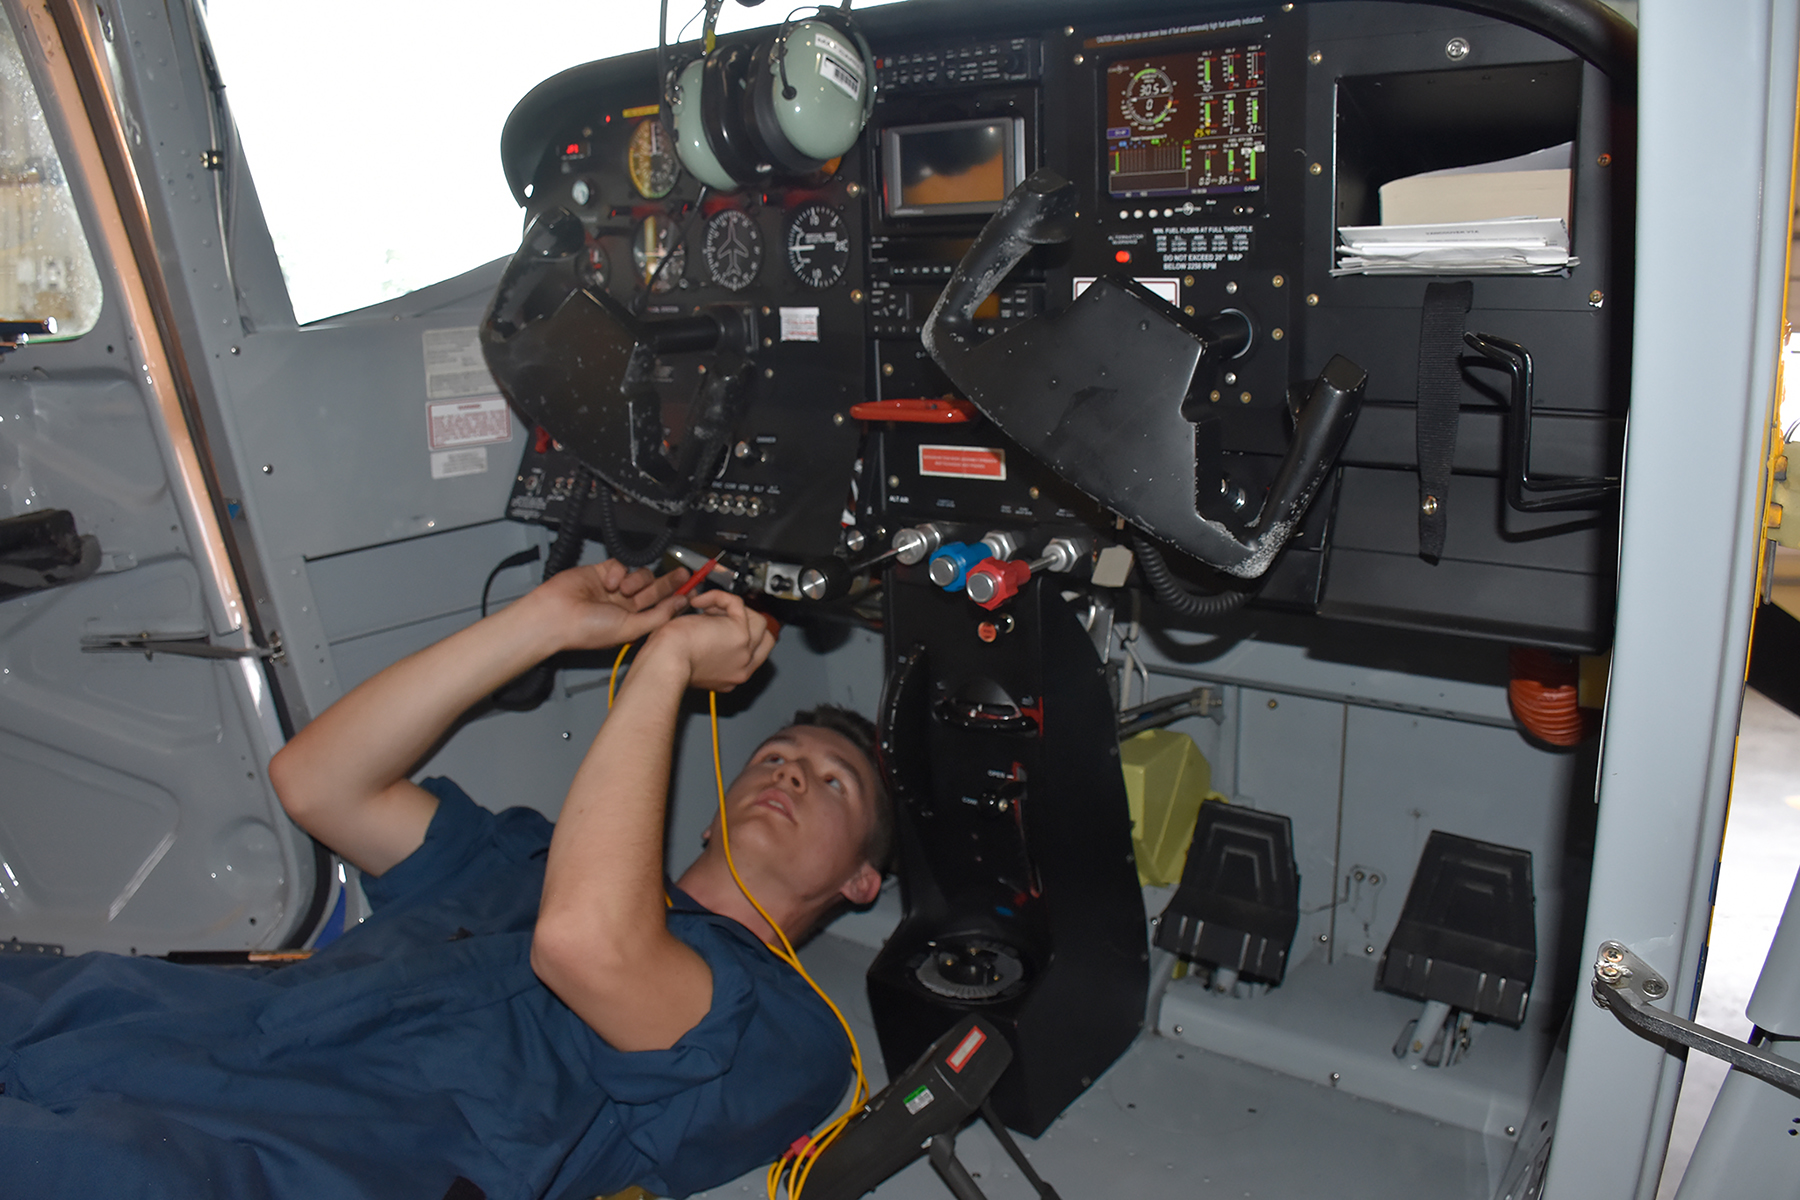 Le cadet-cadre Mitchell Mansfield teste l’équipement électrique du poste de pilotage d’un avion remorqueur au Centre d’entraînement de vol des cadets de Comox, où il travaille cet été comme technicien d’entretien d’aéronefs. PHOTO : Capitaine Angela Sergent